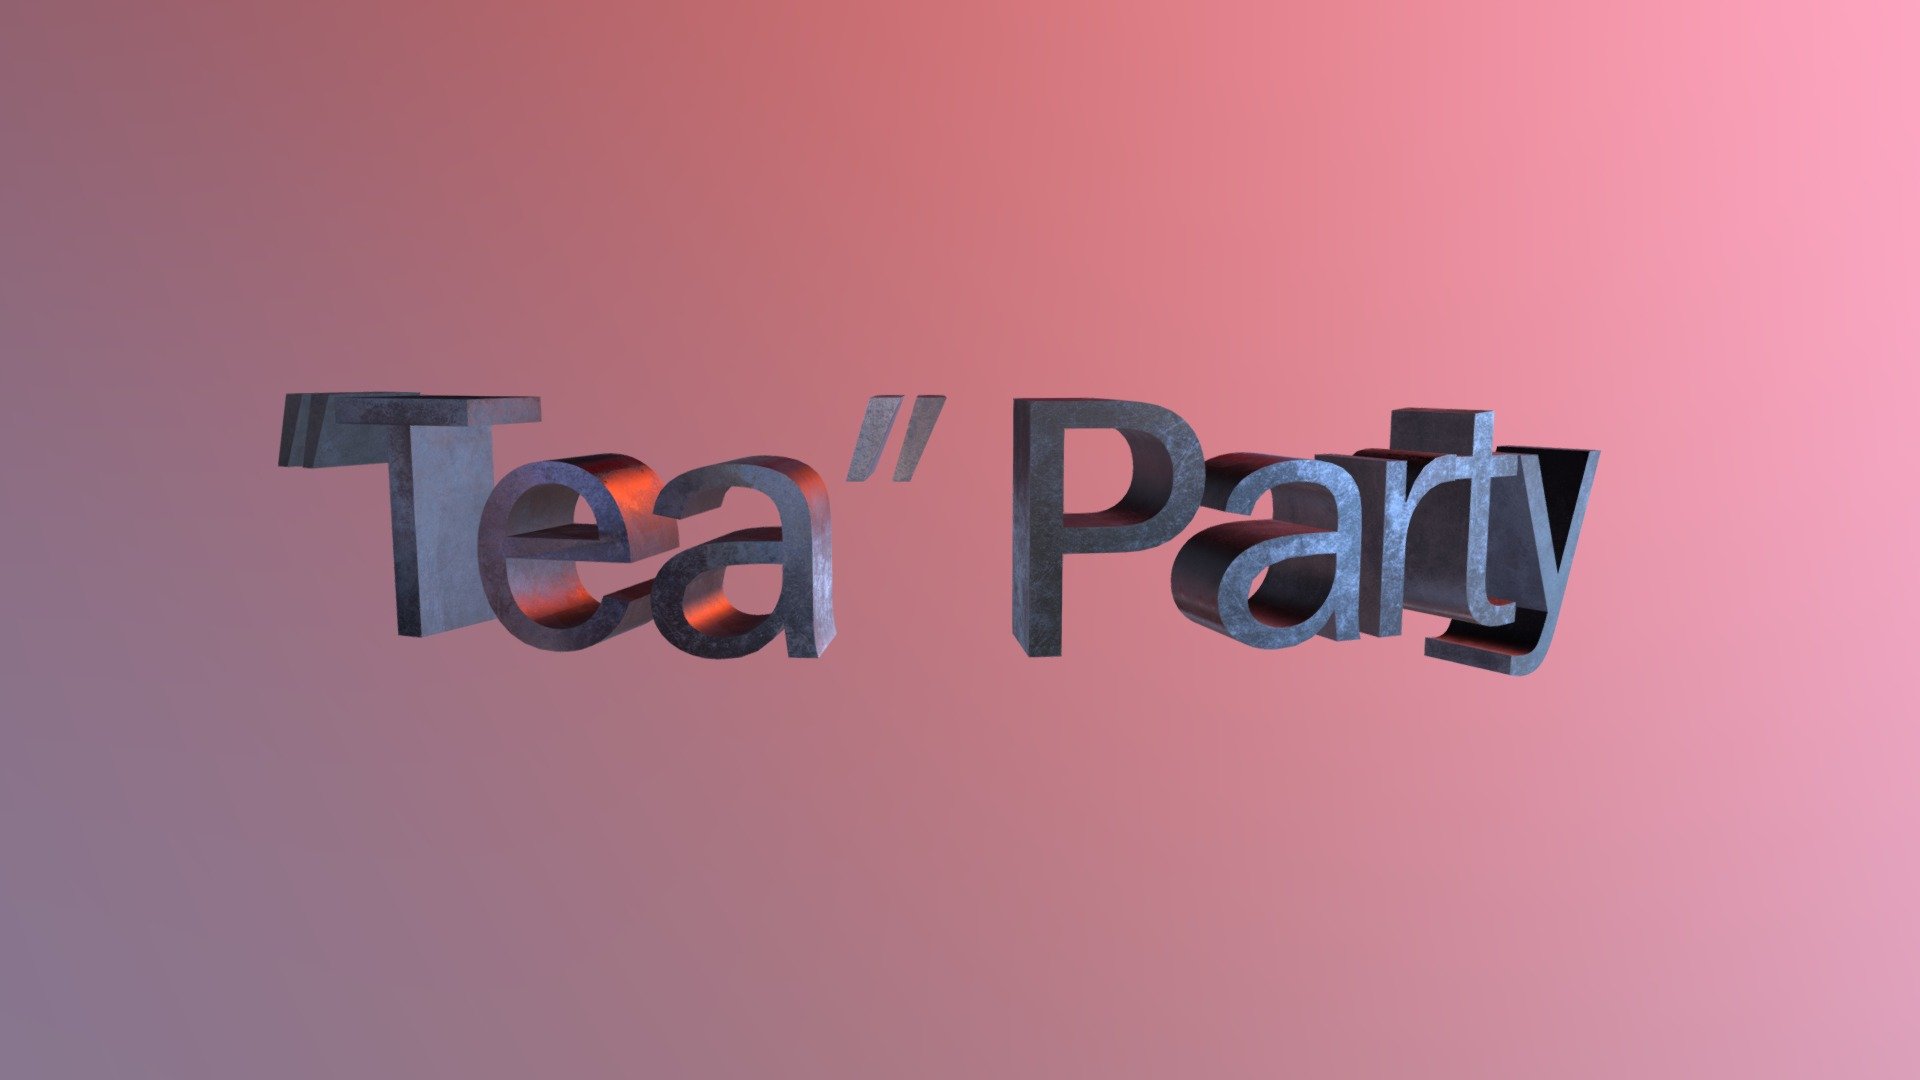 Viking "Tea" Party - 3D Text